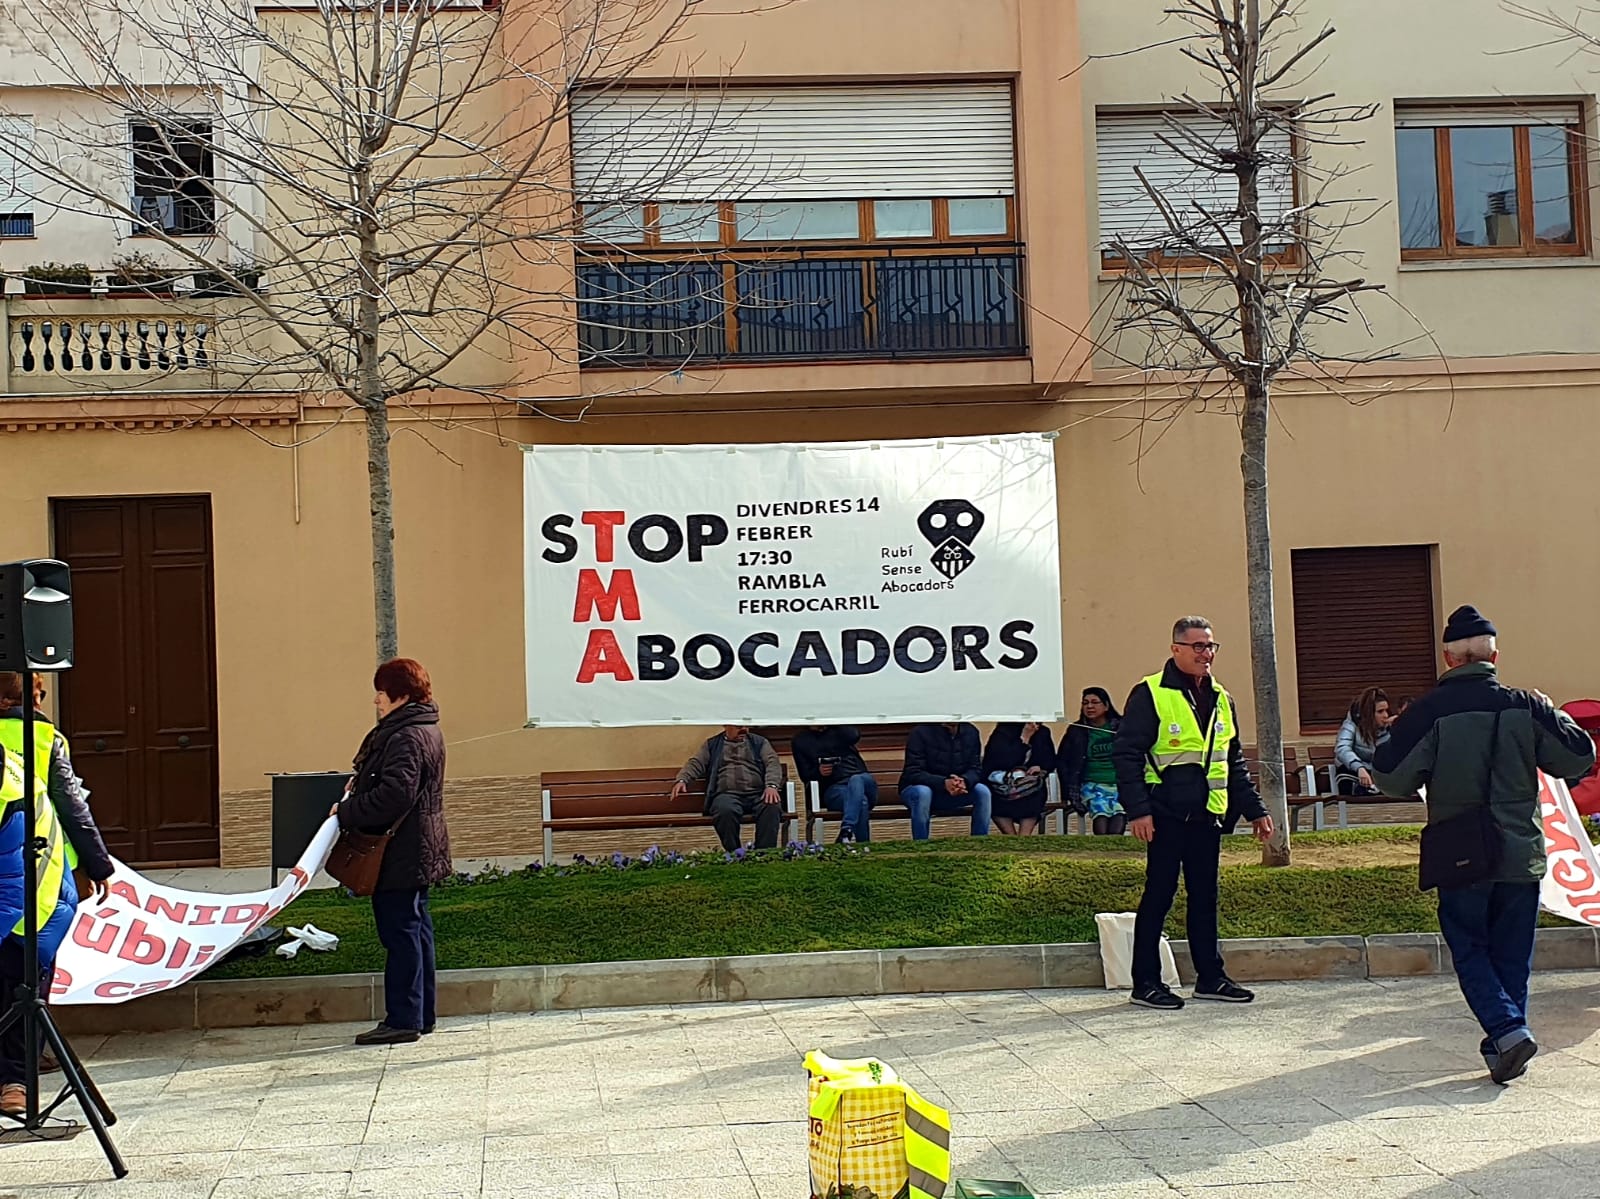 Pancarta amb la convocatòria de divendres 14 de febrer contra l'abocador de Can Balasc. FOTO: Joaquim Gràcia